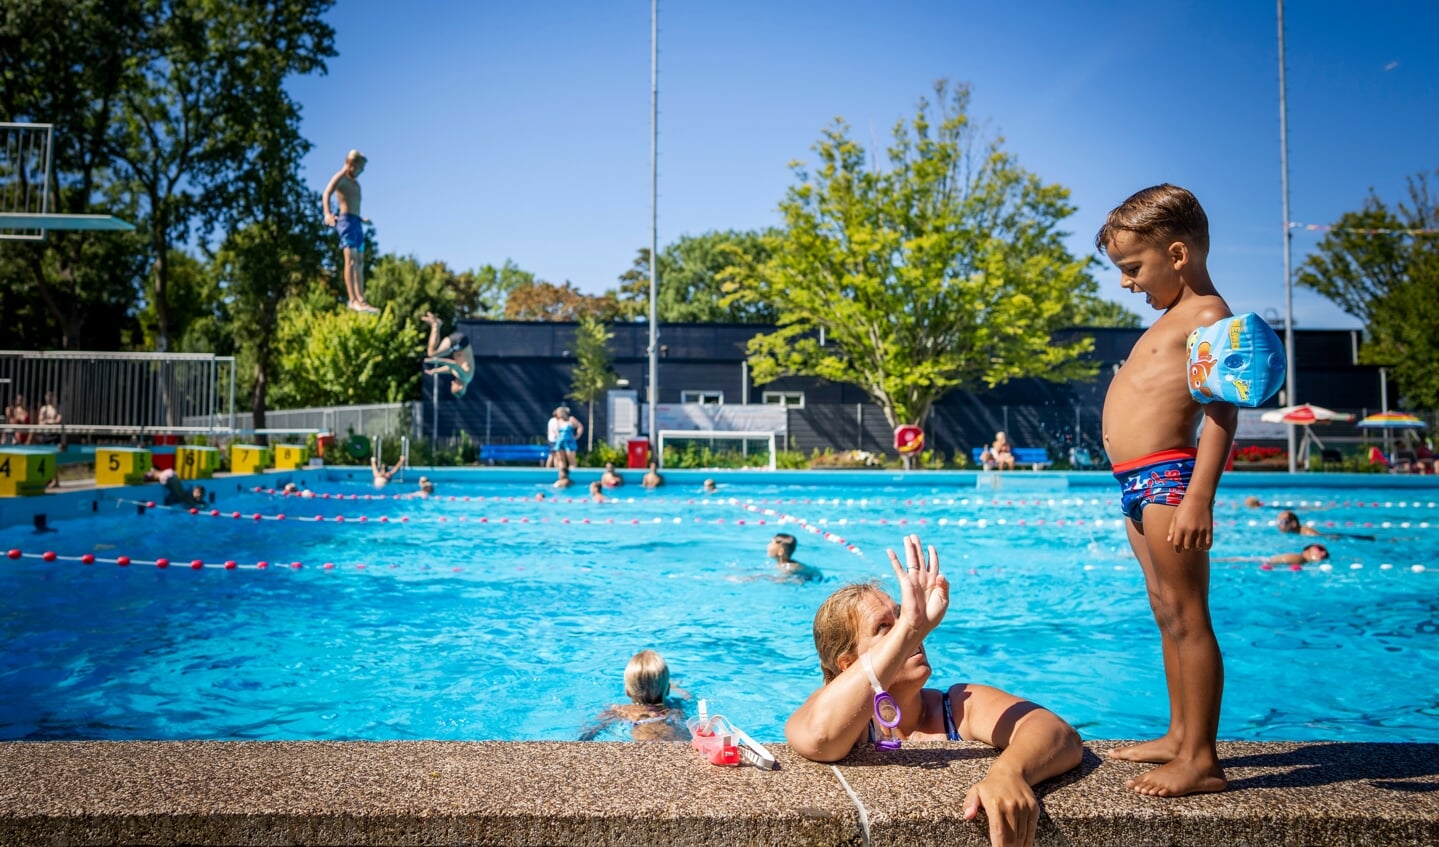 09-08-2022 LEIDEN - Badgasten in het zwembad (namen bekend bij de verslaggever). Zwembad de Vliet in Leiden maakt gebruik van een systeem dat zout omzet in chloor. FREEK VAN DEN BERGH